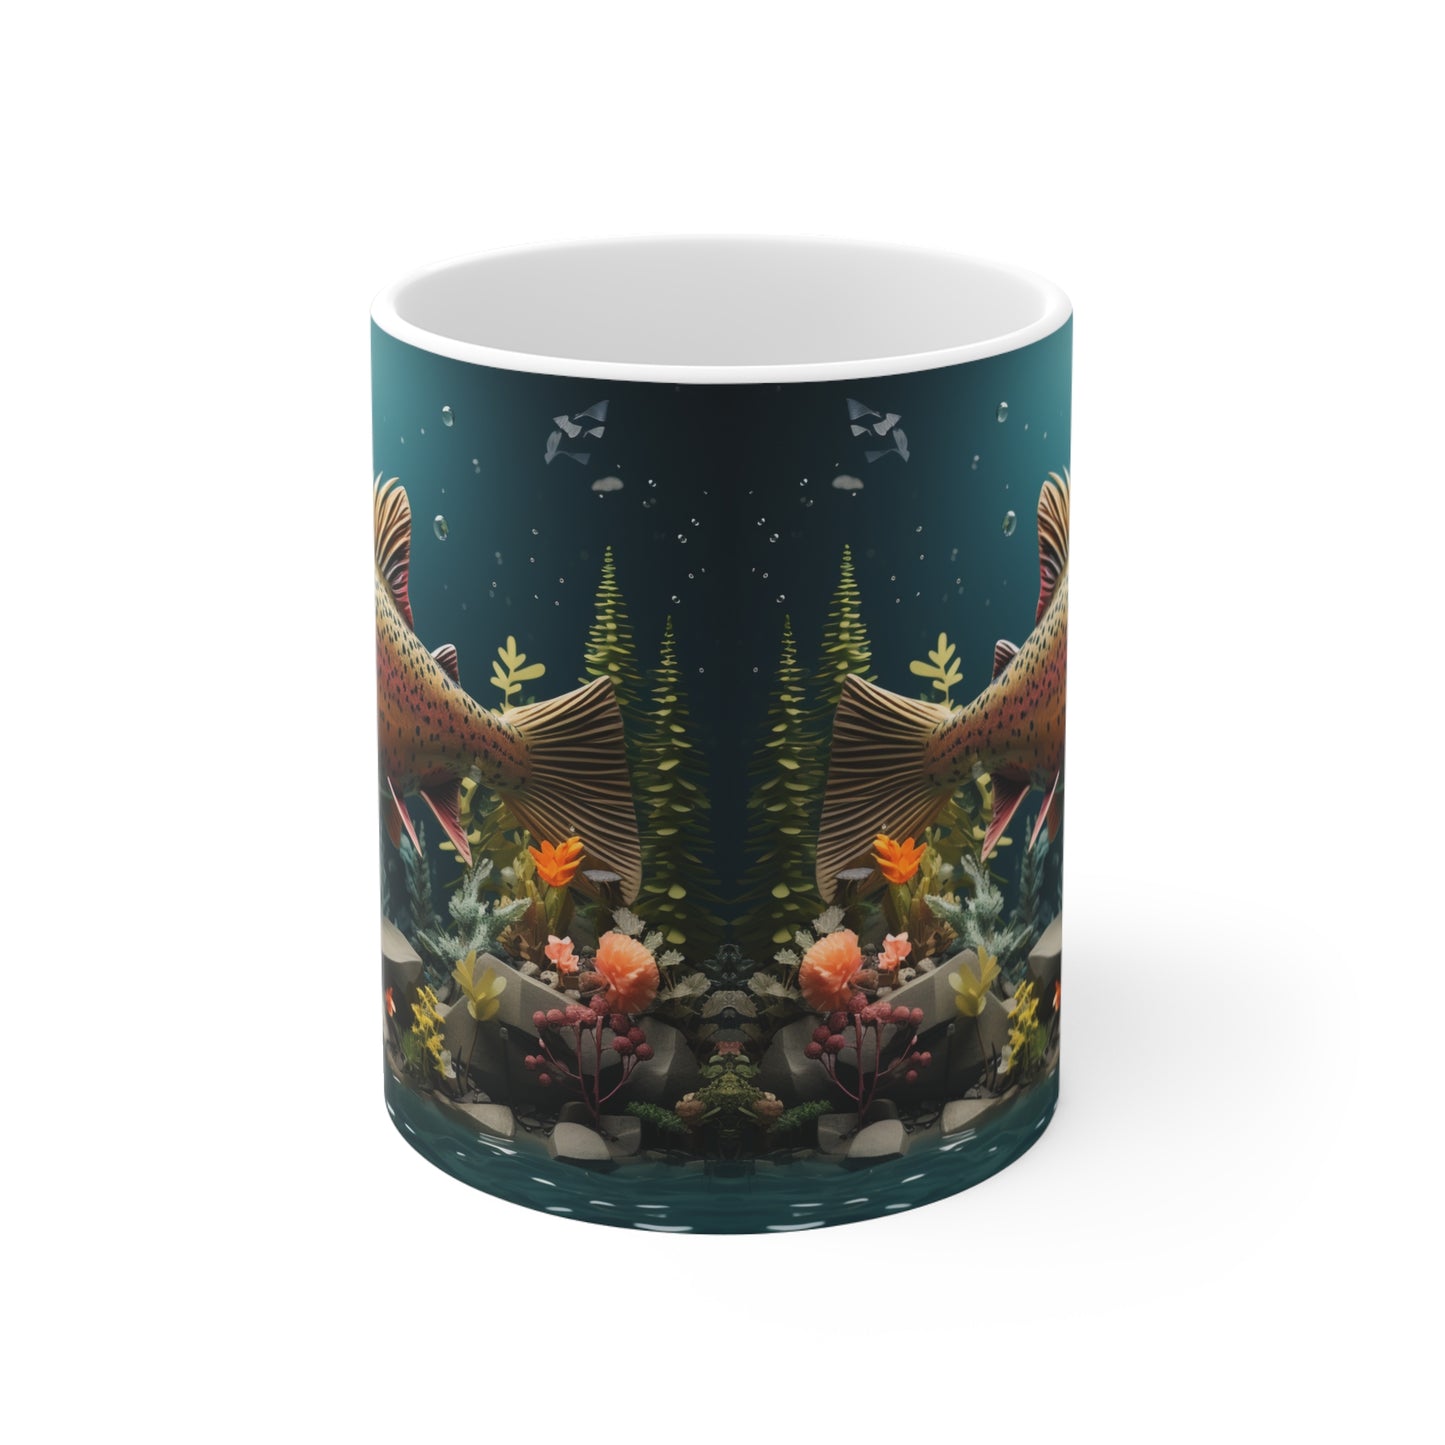 Rainbow Trout in Underwater Garden 11oz Coffee Mug